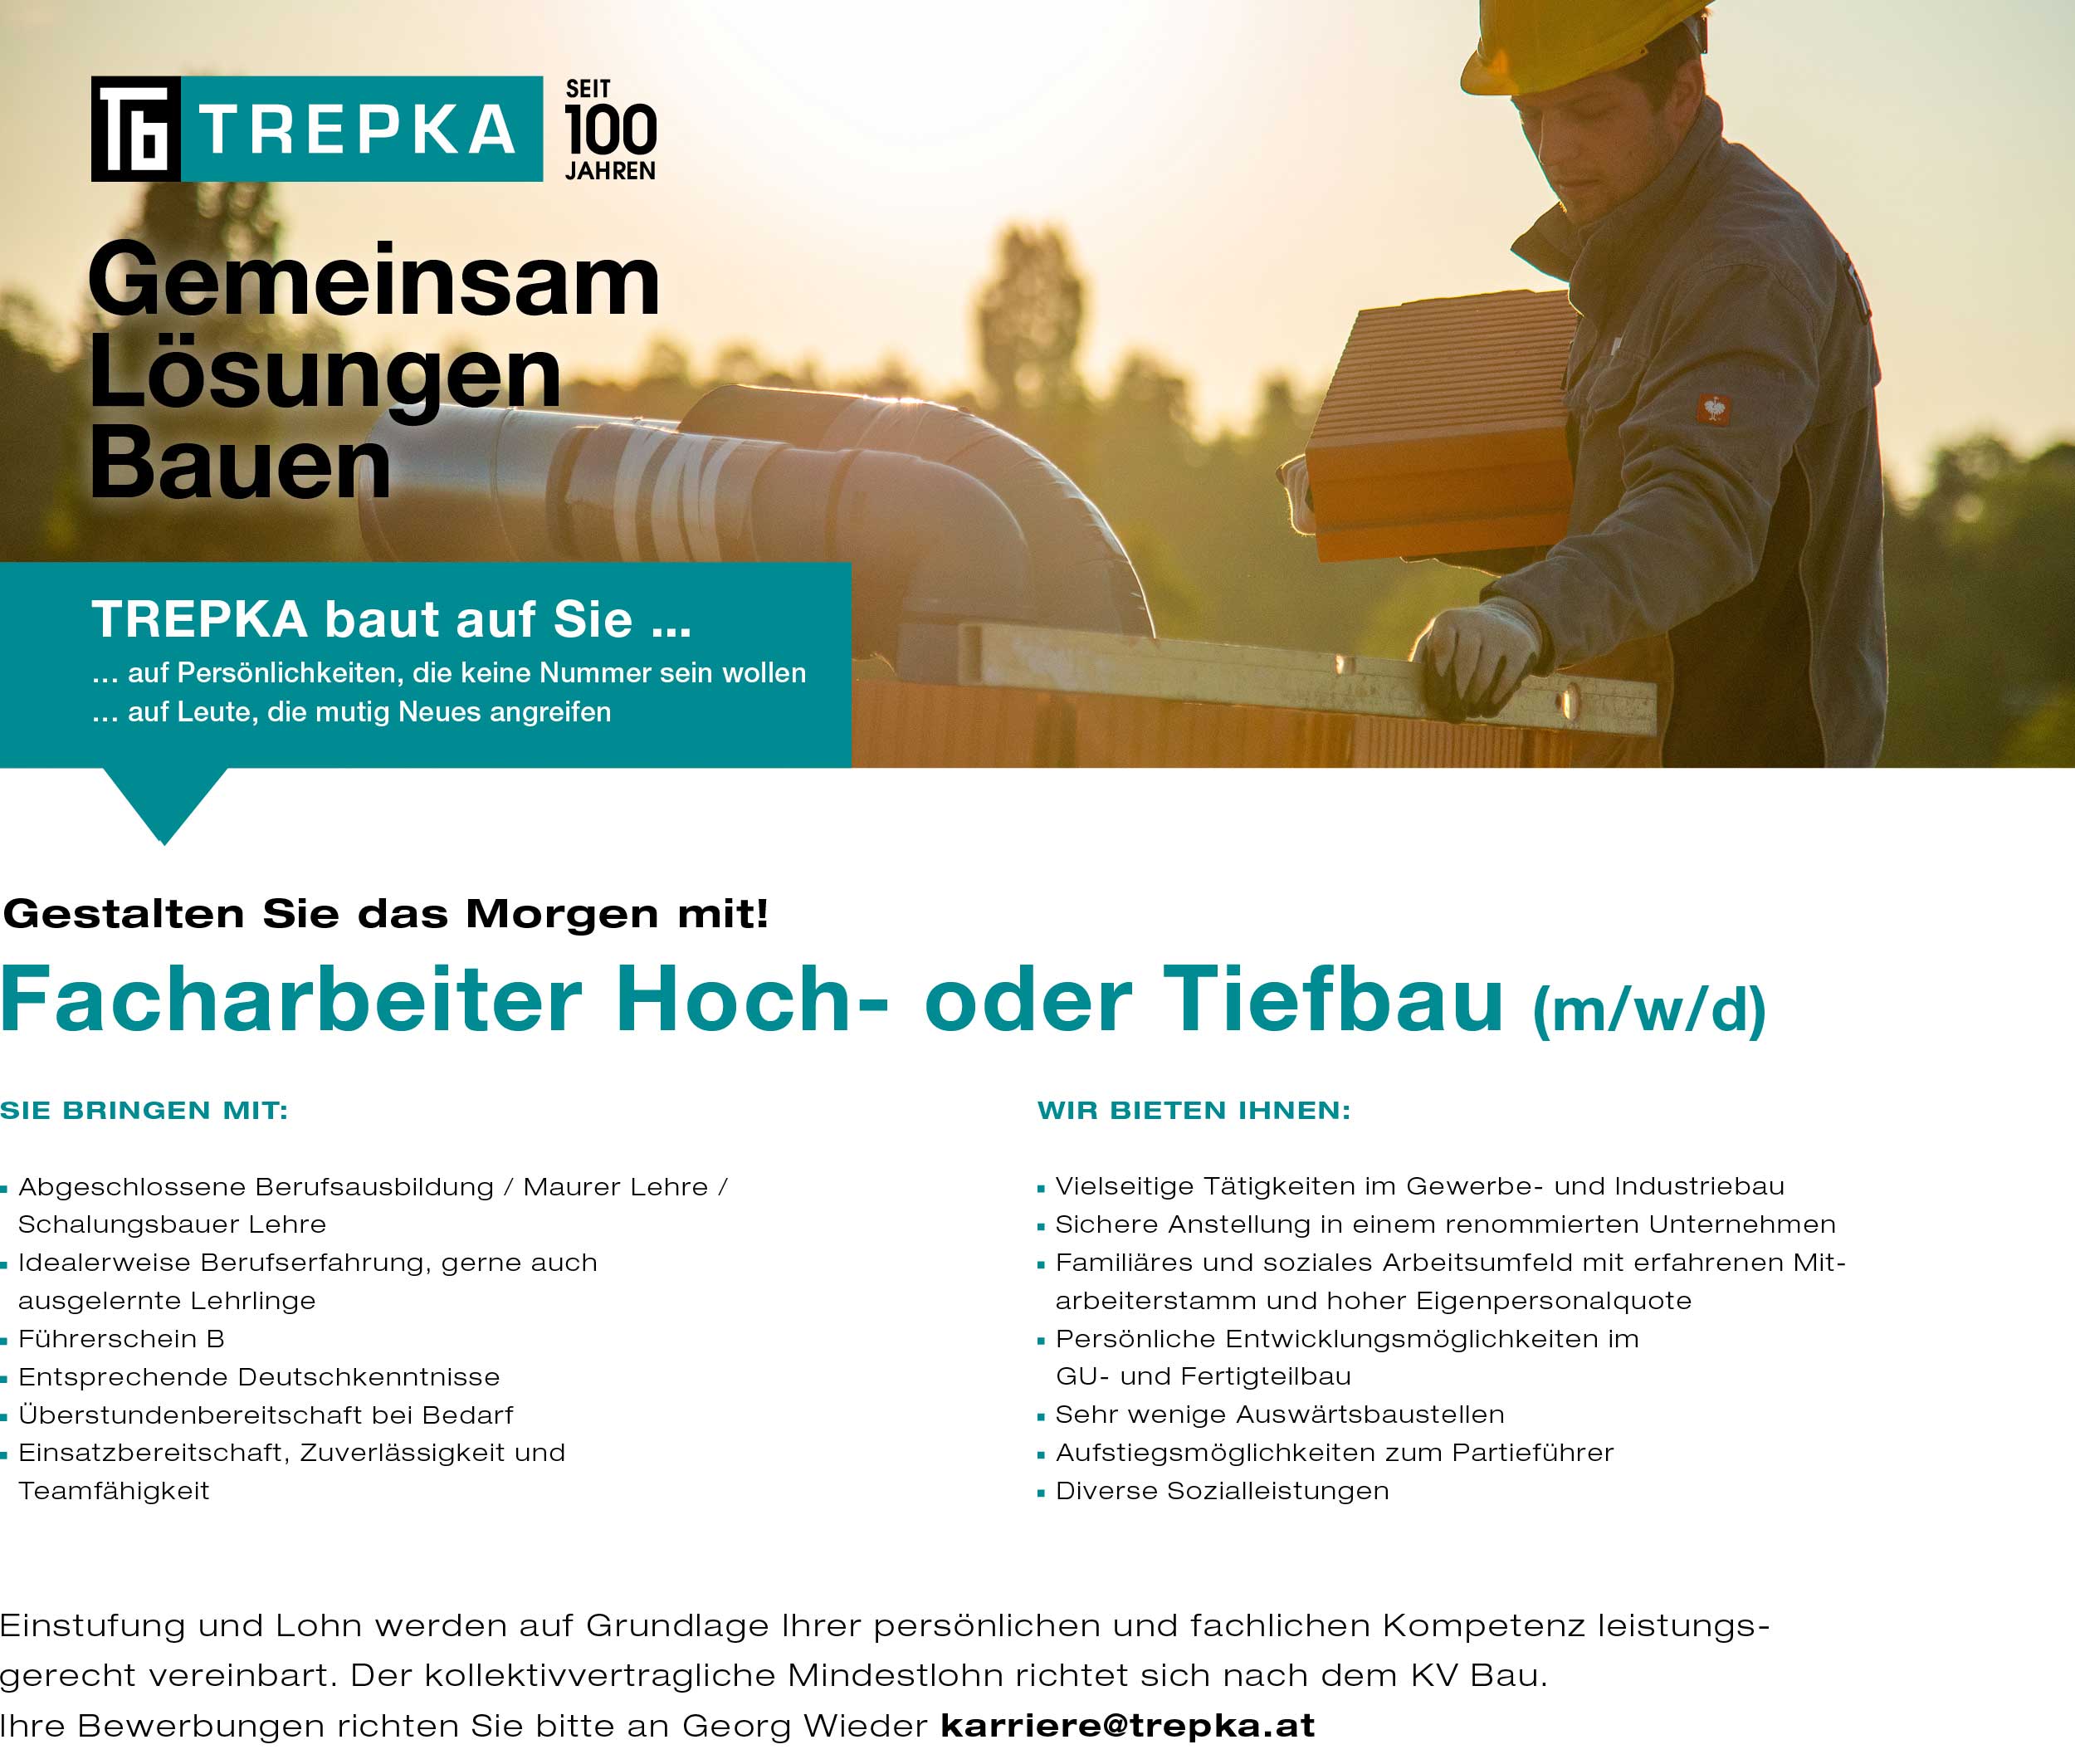 Facharbeiter für Hoch- oder Tiefbau Vollzeit in Ober-Grafendorf bei Trepka.